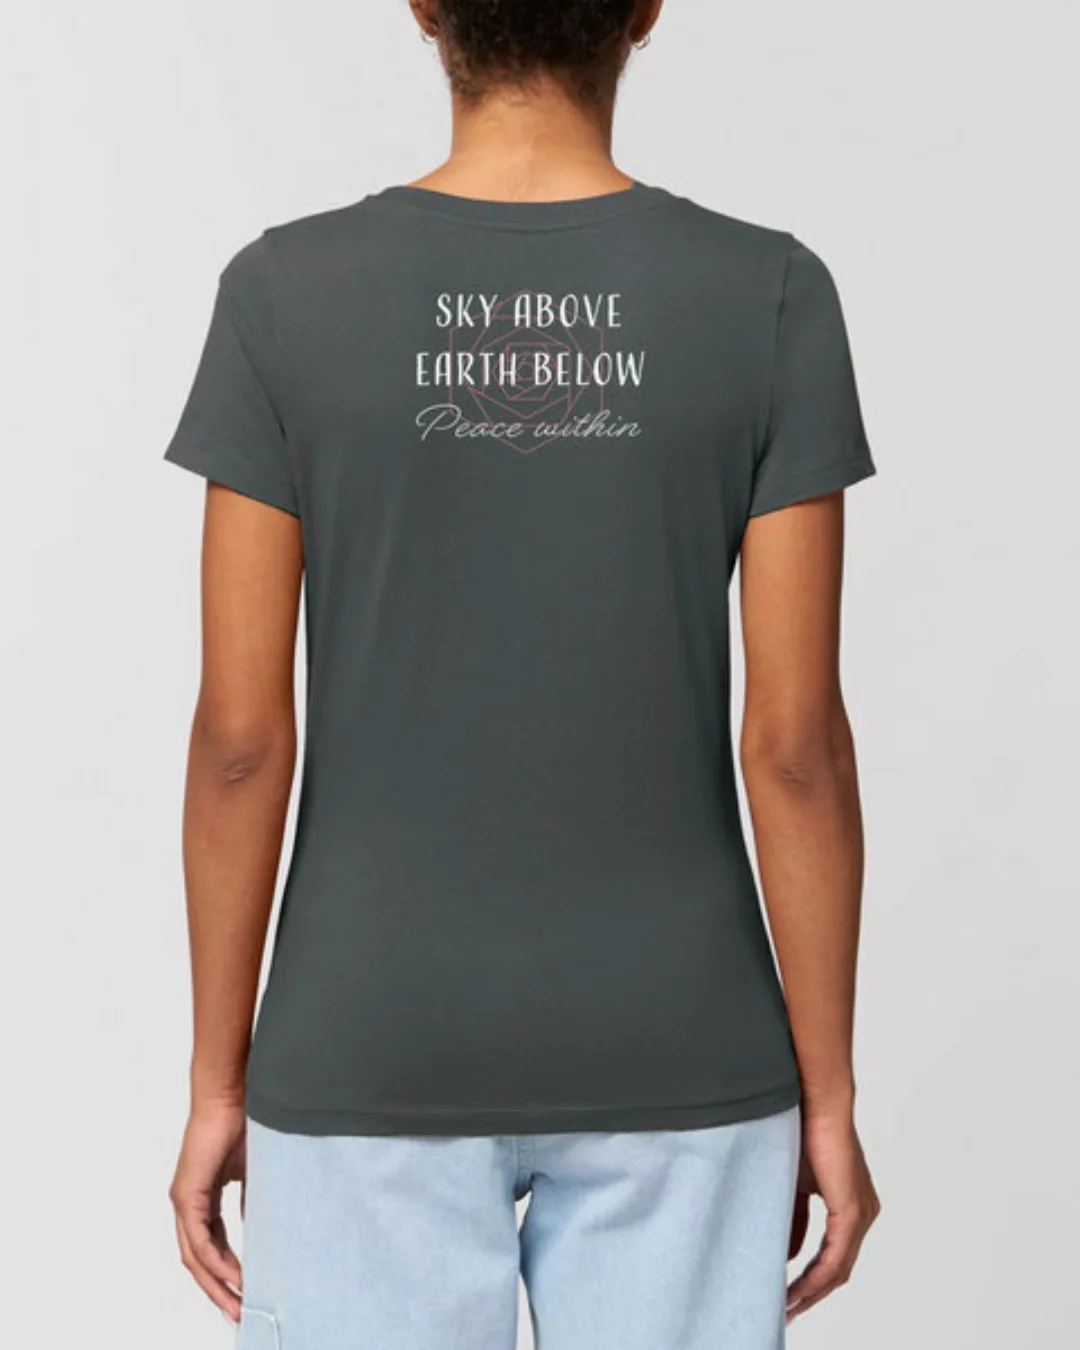 Bio Damen Rundhals Statement T-shirt "Peace Within" Von Human Family günstig online kaufen